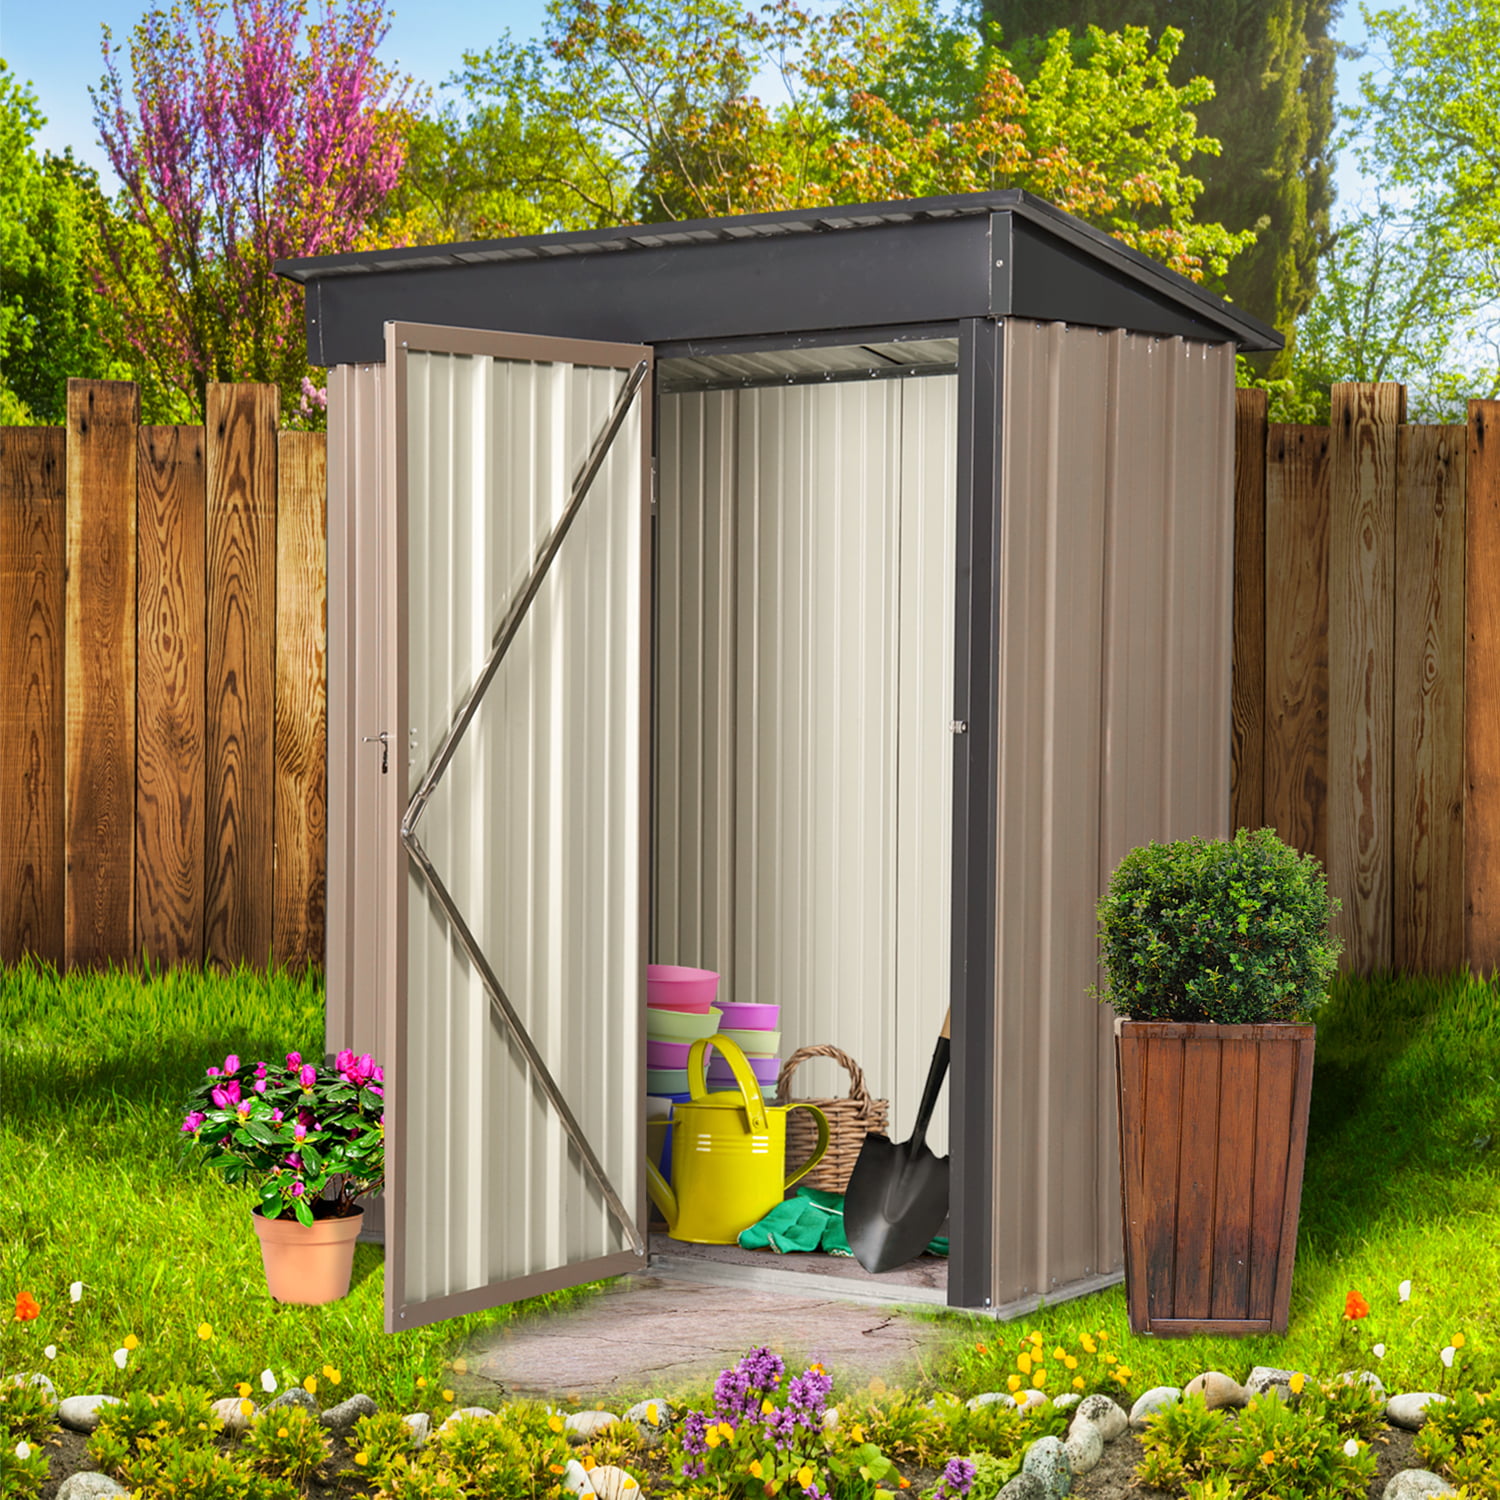 Details about   Base Storage Cabinet Utility Outdoor Shelf Yard Garden Patio Garage Box 37" 